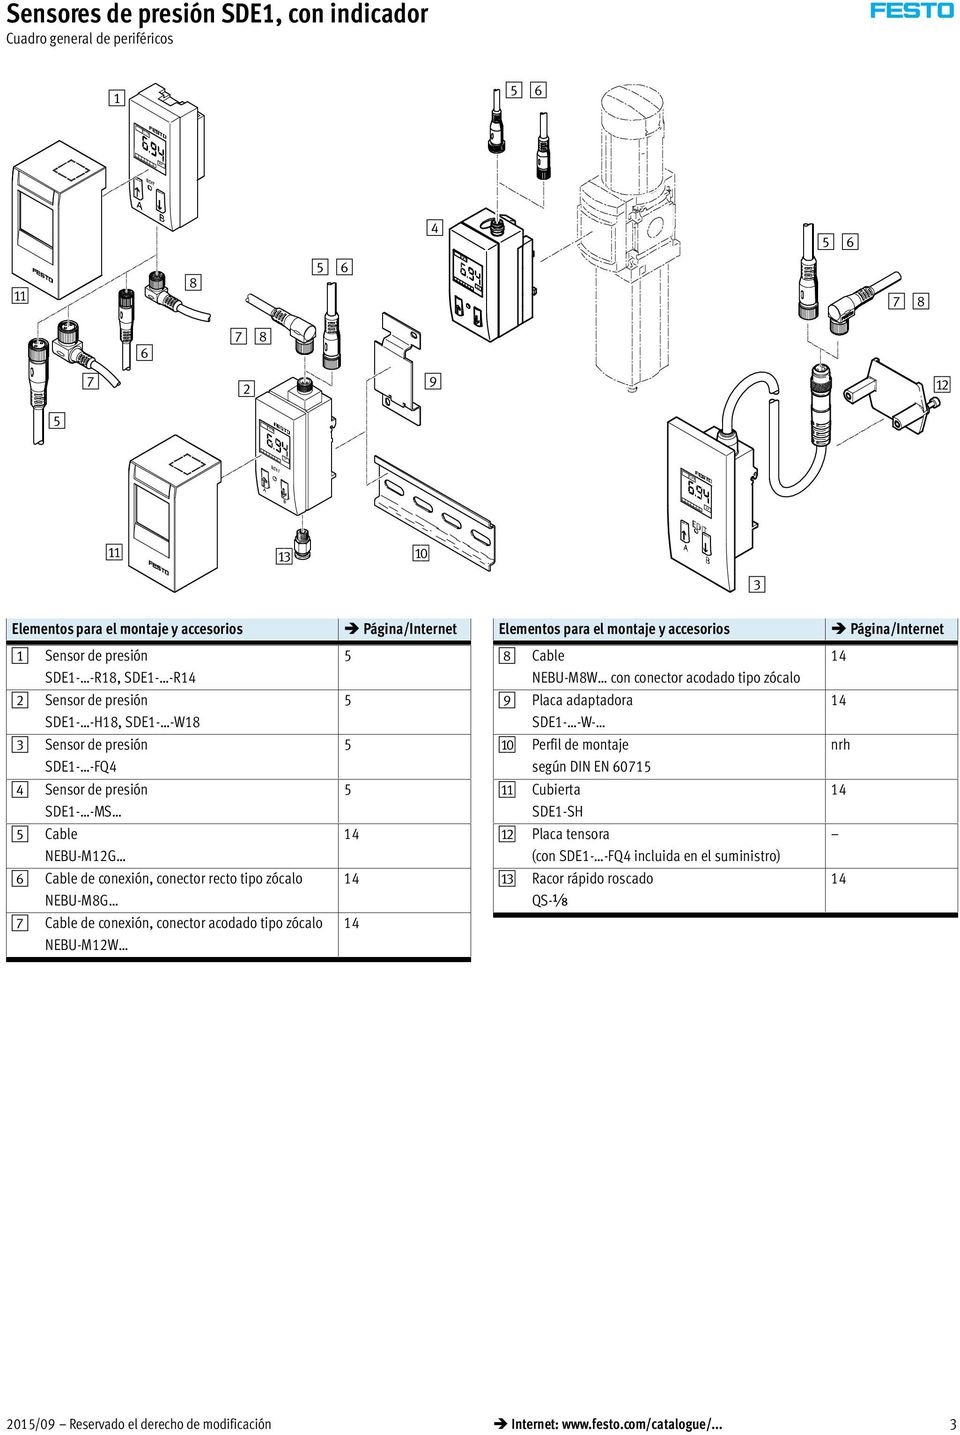 -FQ4 5 aj Perfil de montaje según DIN EN 60715 nrh 4 Sensor de presión SDE1- -MS 5 aa Cubierta SDE1-SH 14 5 Cable NEBU-M12G 14 ab Placa tensora (con SDE1- -FQ4 incluida en el suministro) 6 Cable de